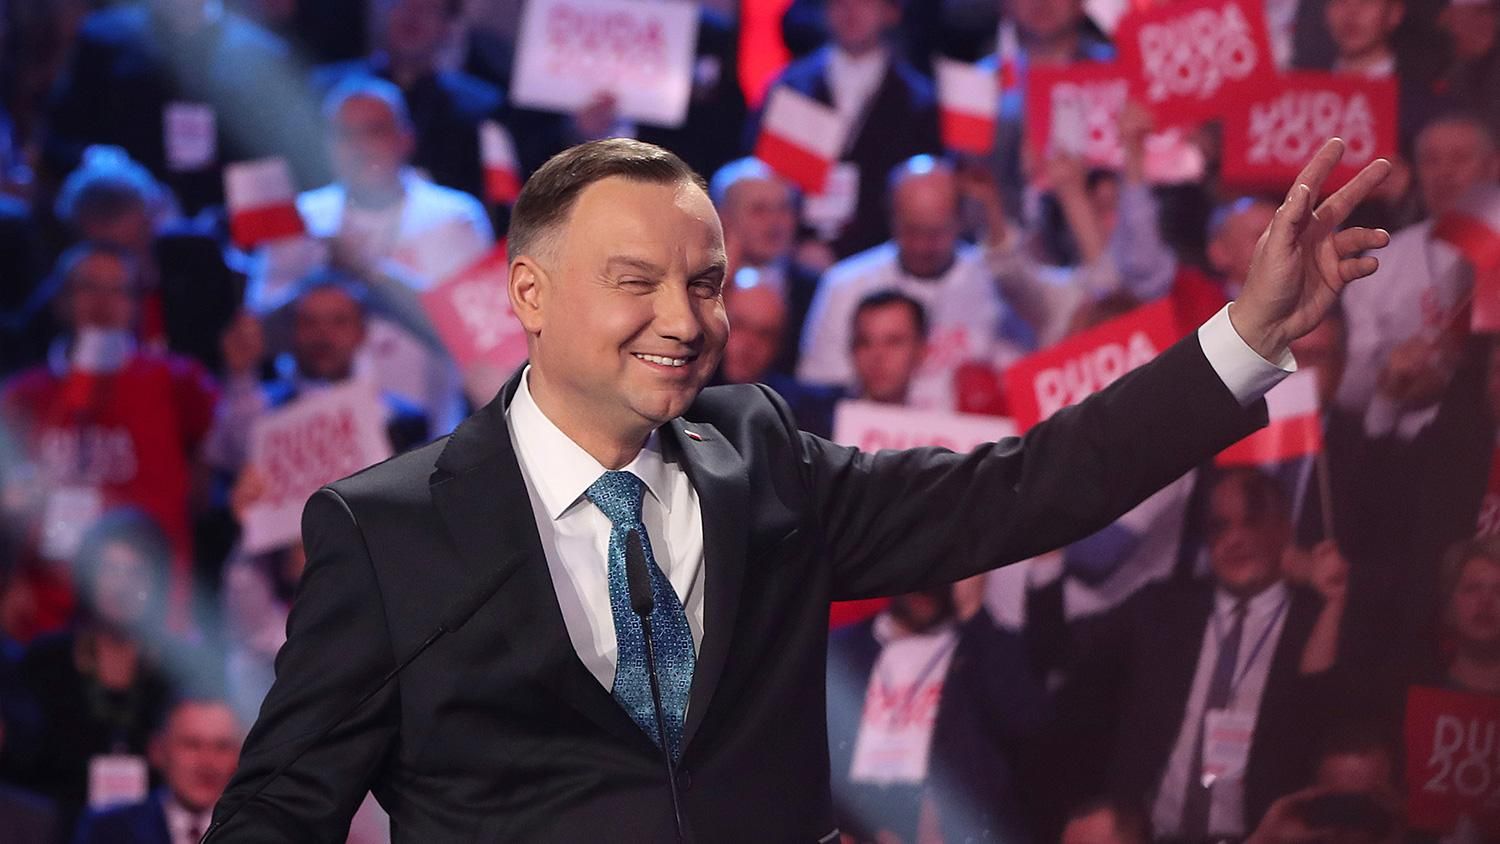 Анджей Дуда – биография нового президента Польши 2020